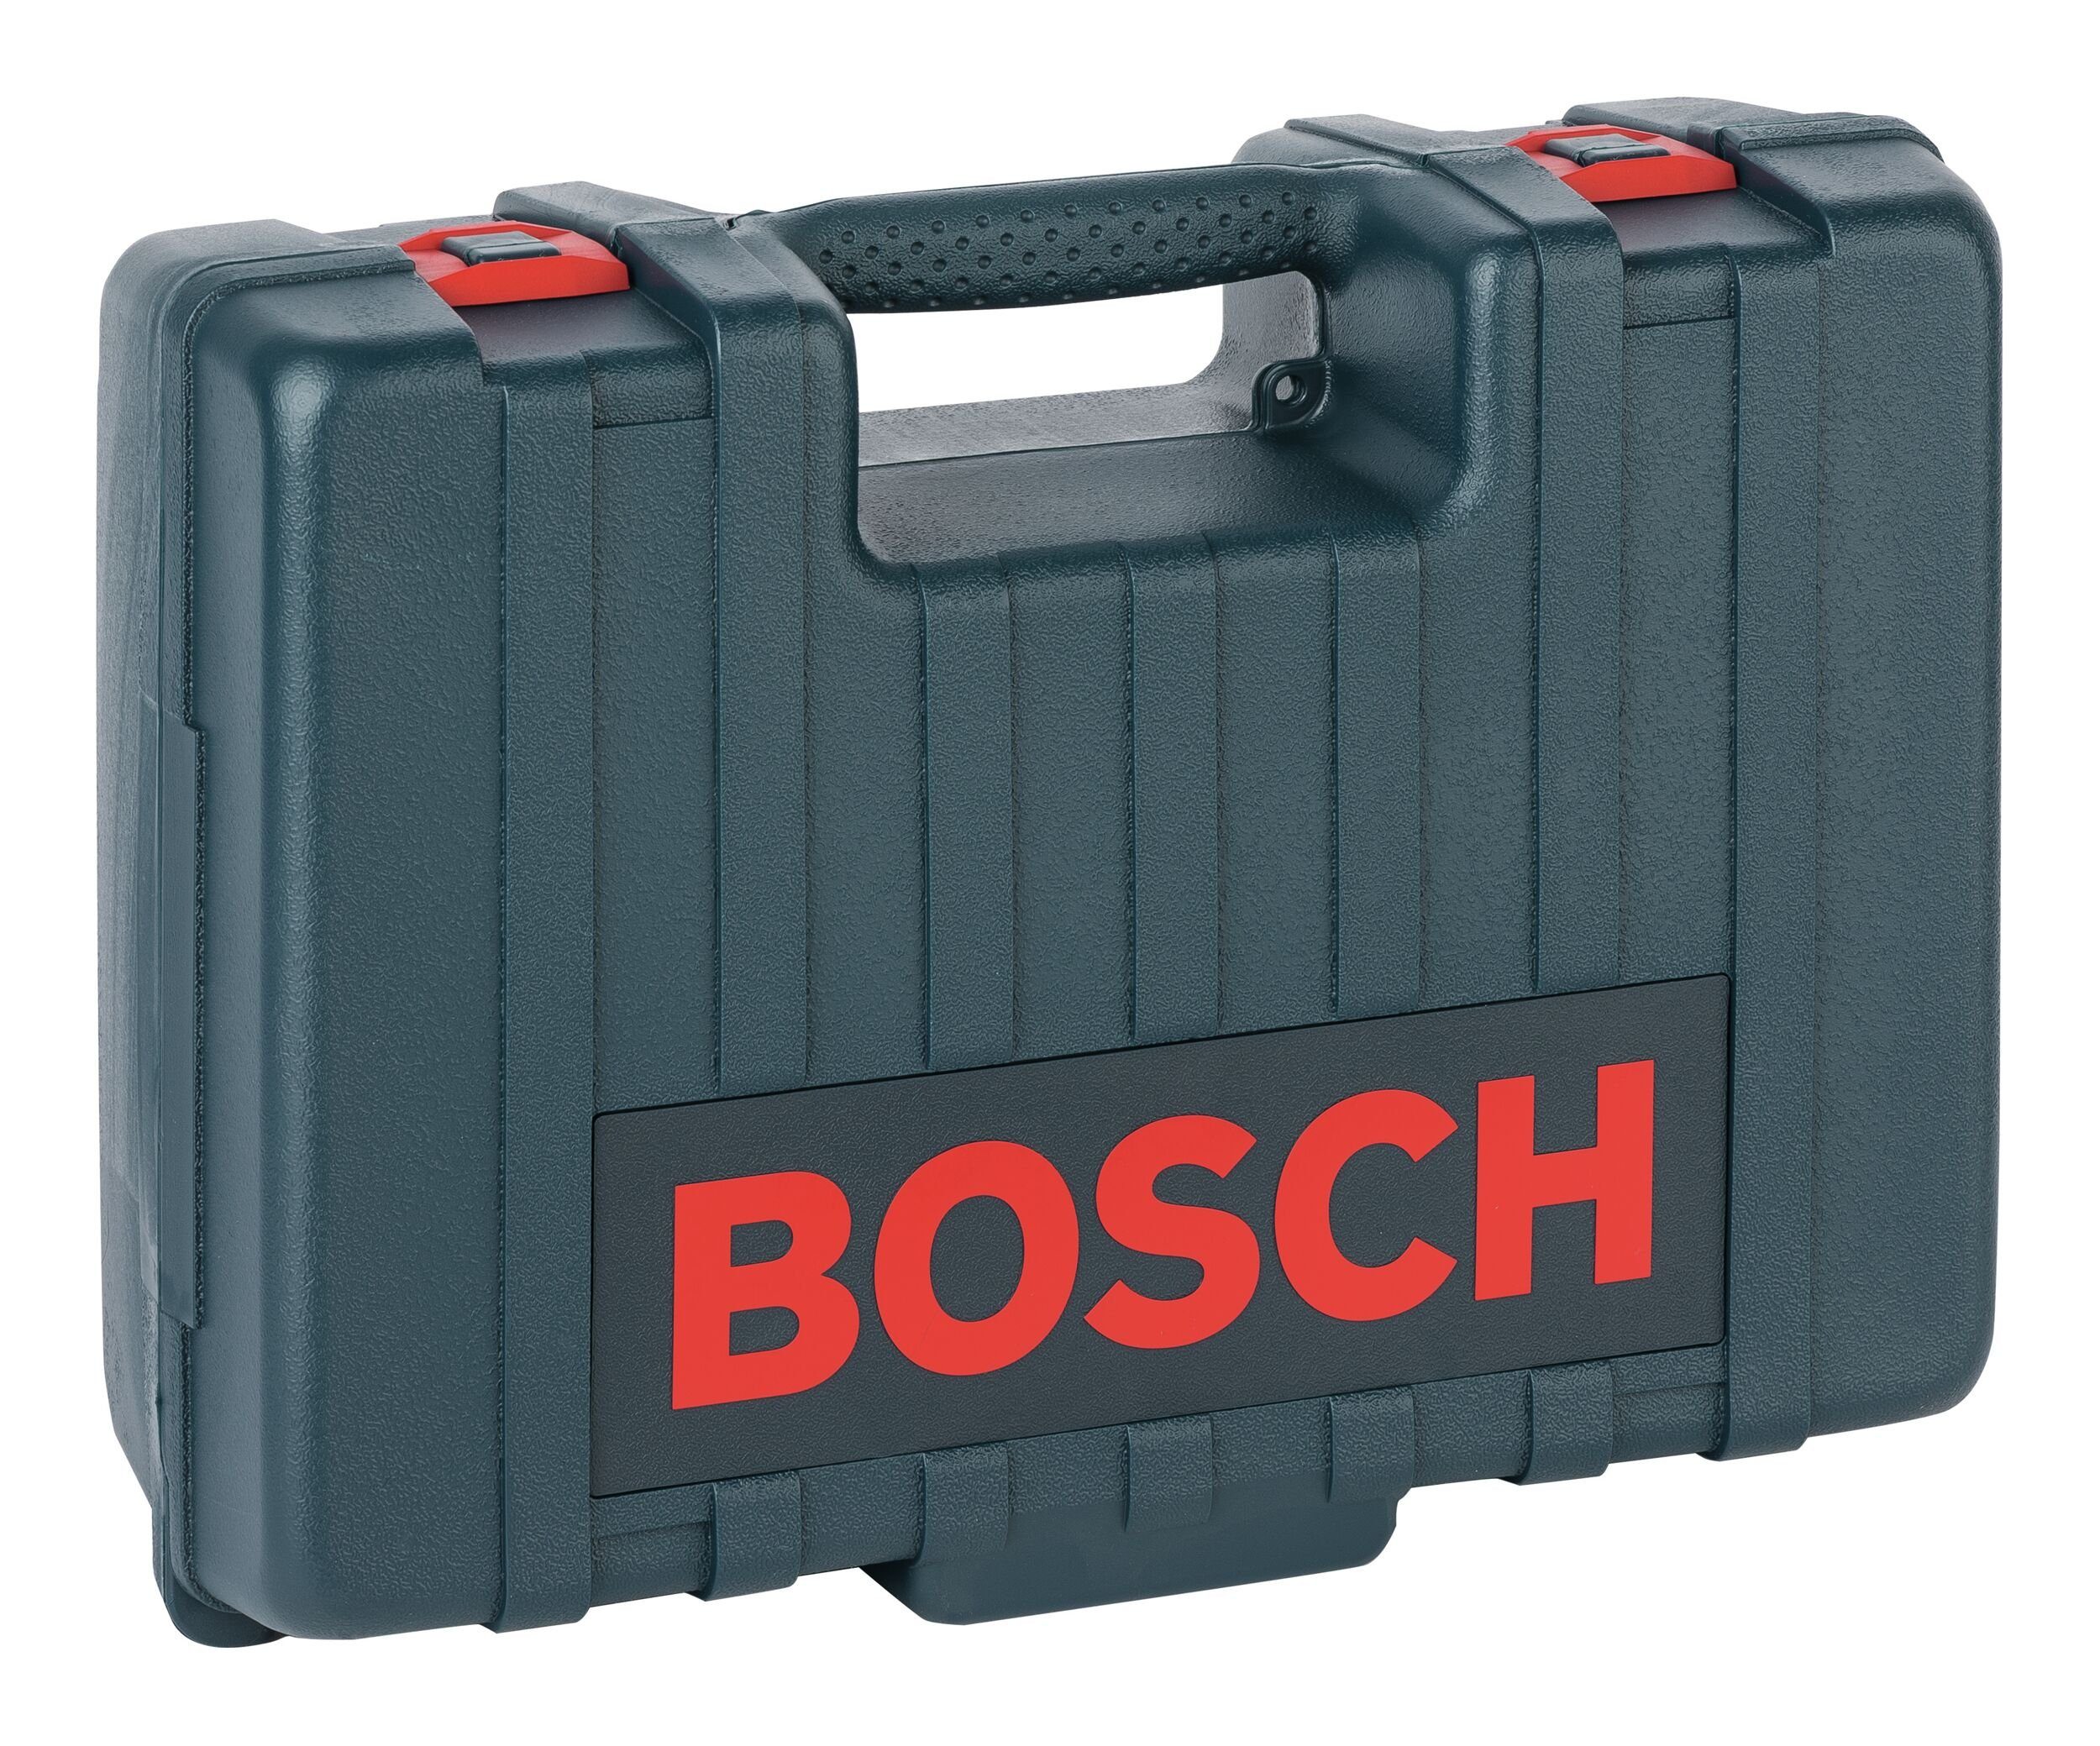 & 173 Bosch mm Garden 317 - Werkzeugkoffer, Kunststoffkoffer 720 Home x x